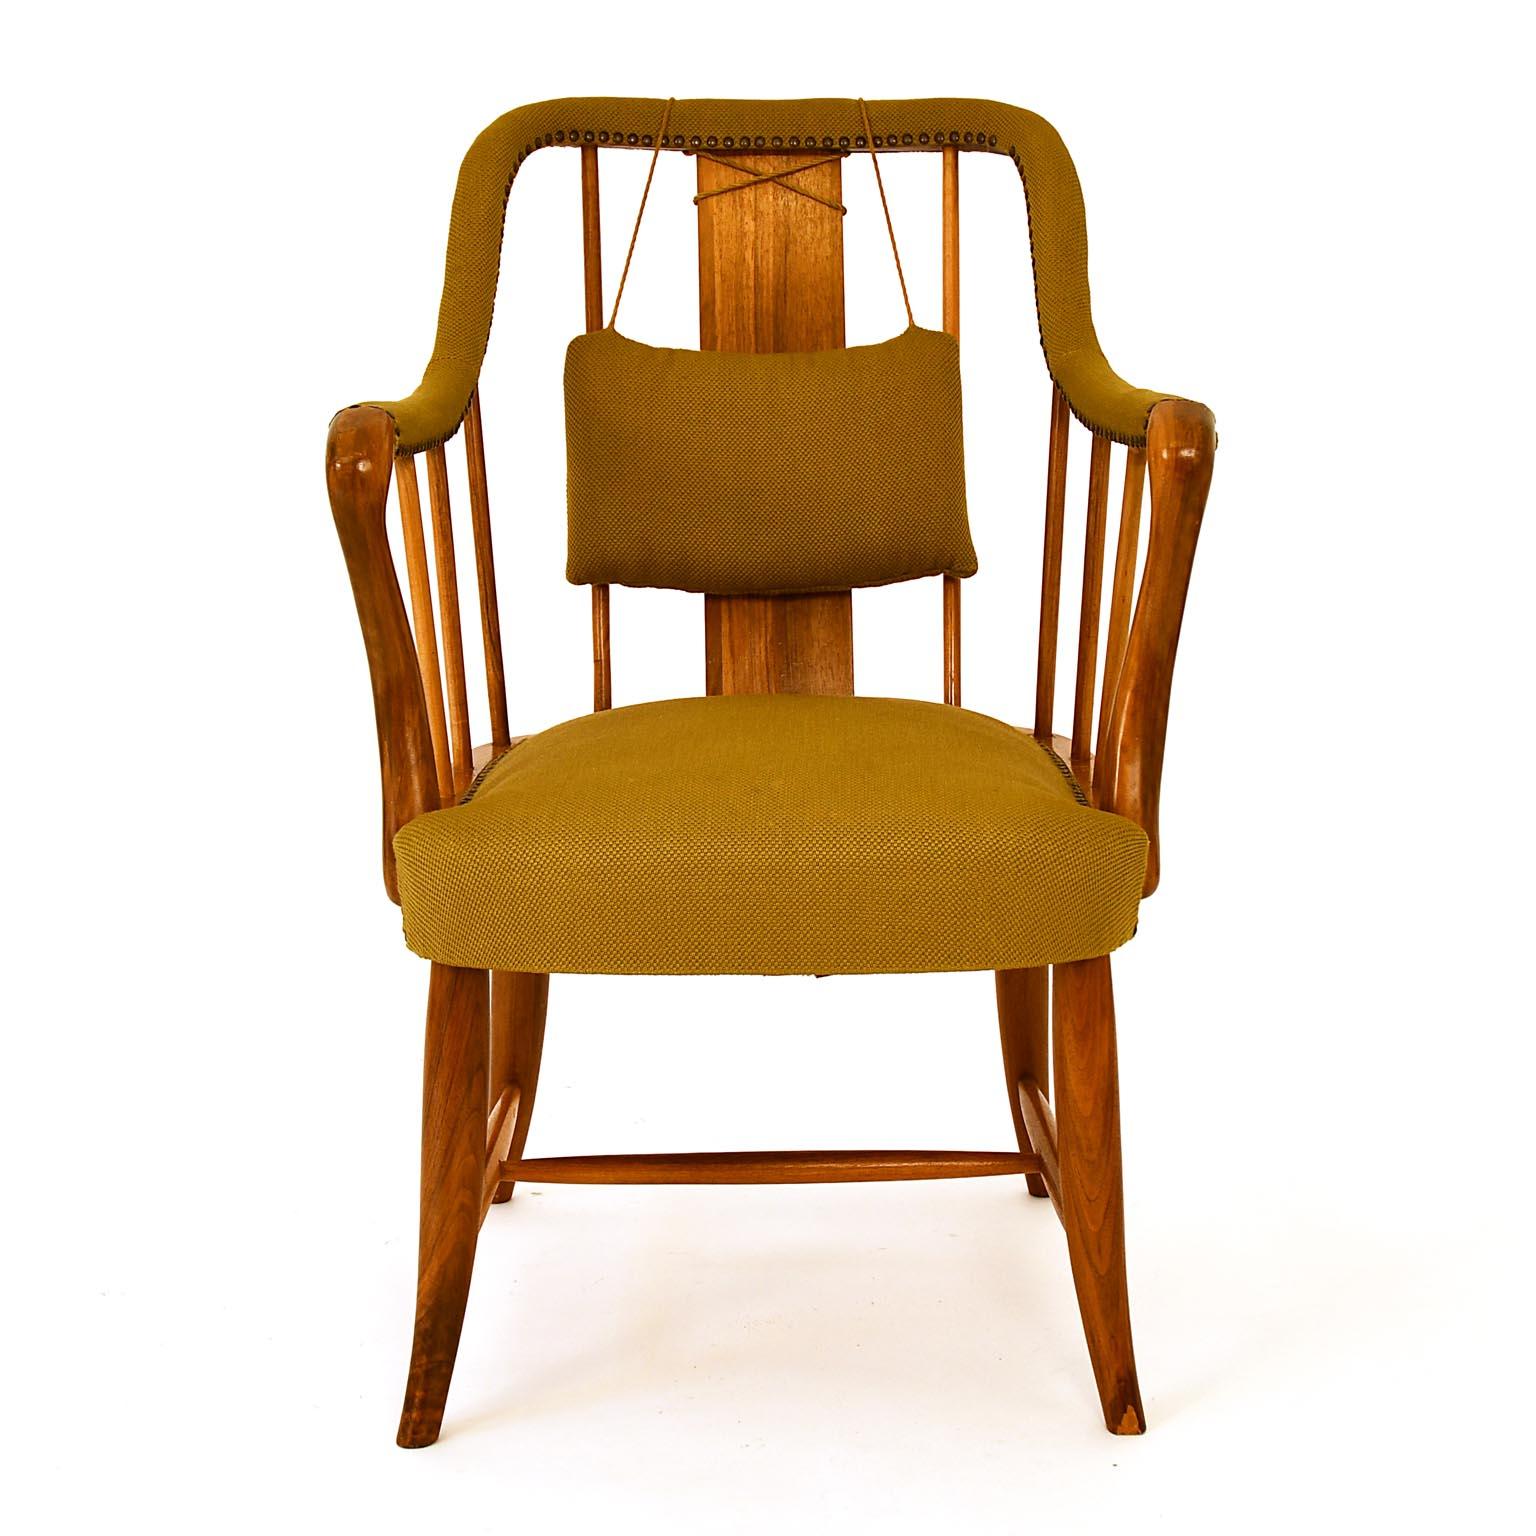 Josef Frank entwarf diesen Stuhl um 1925 in einer kleineren Version und 1930 in einer größeren, bequemeren Version. Er benutzte sie für die Villa Beer in Wien, aber auch für den flachen Blitz. Gestell aus massivem Nussbaumholz, Sitzfläche aus Buche,